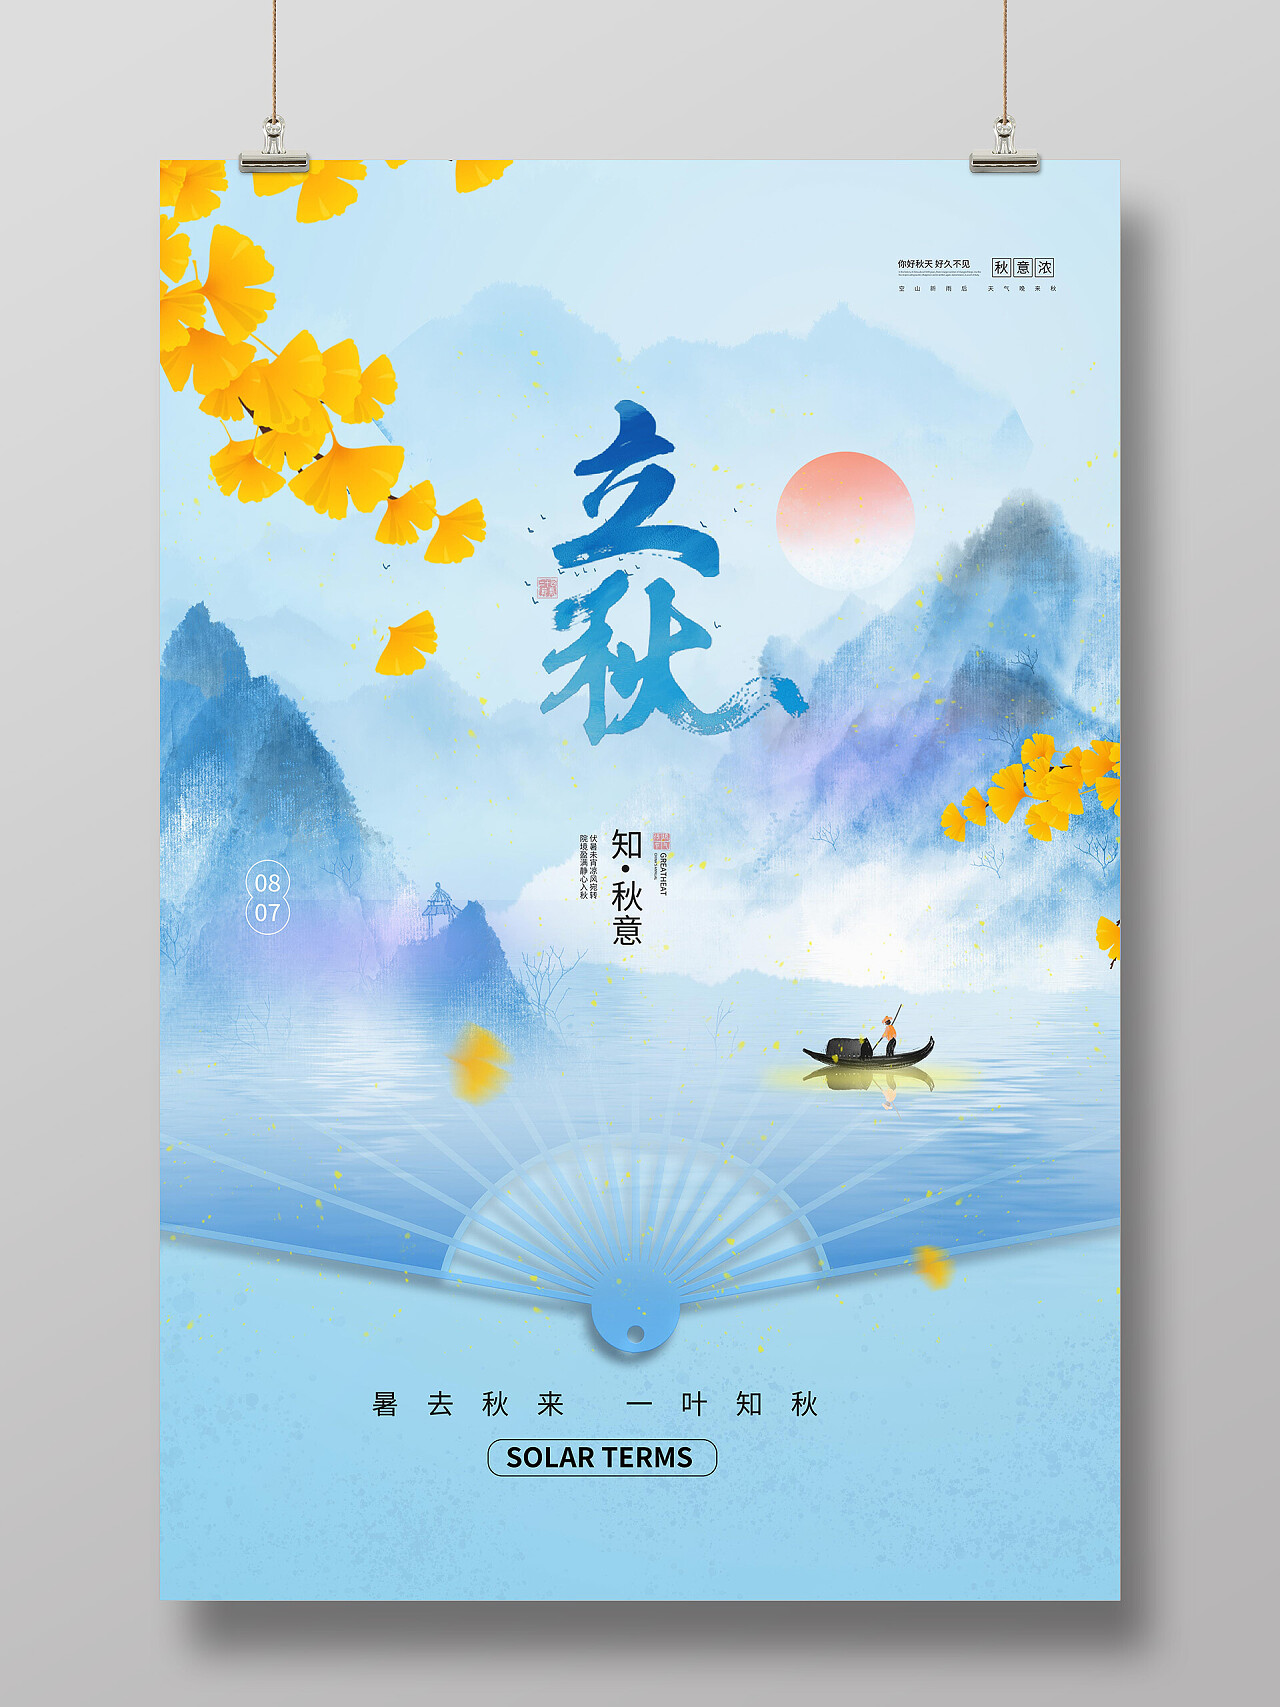 浅蓝色背景创意水彩风格立秋中国二十四节气海报设计立秋海报节日